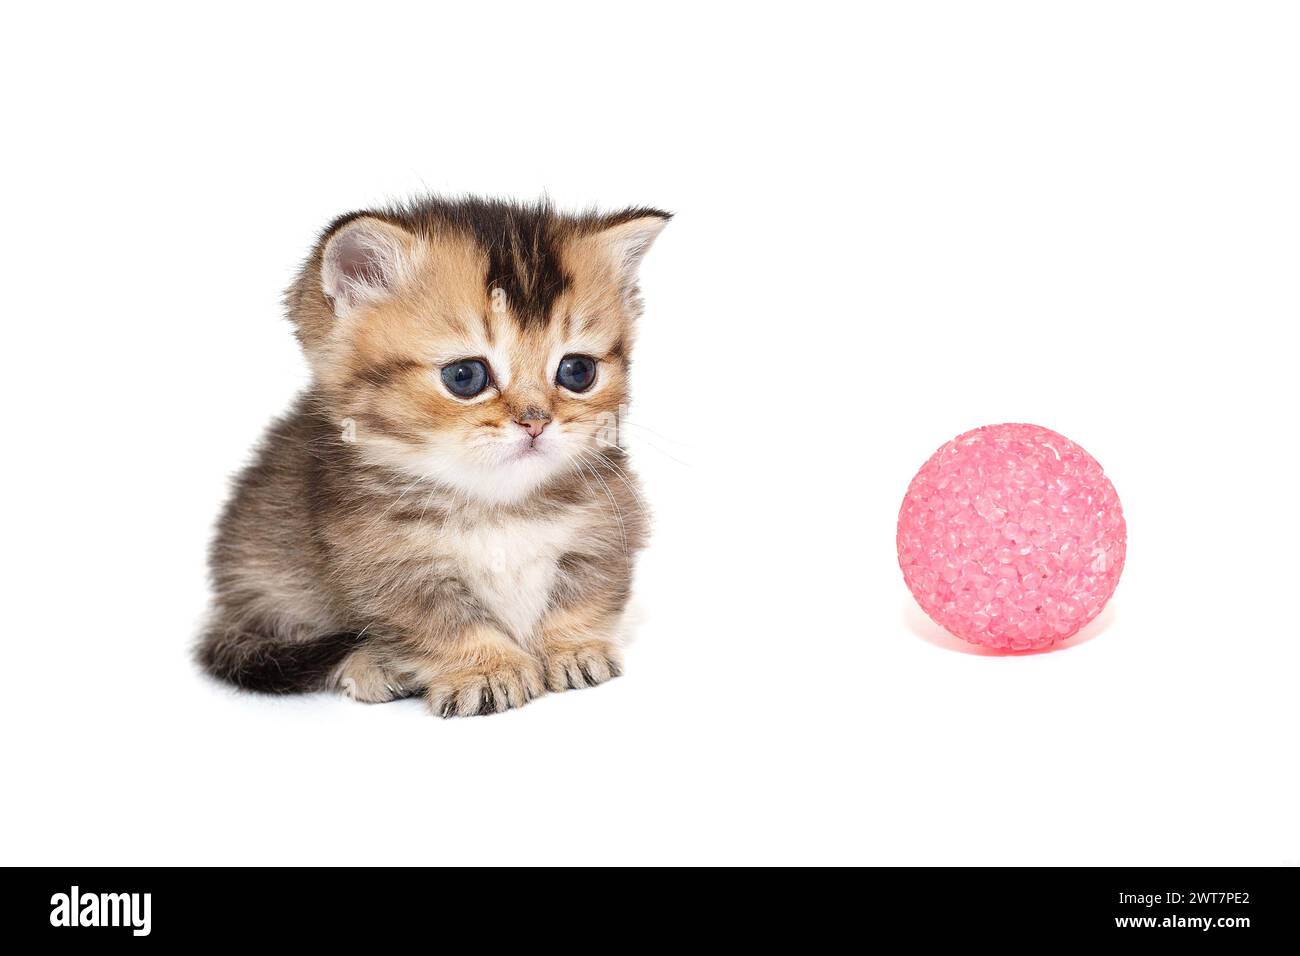 Petit chaton écossais à pattes courtes et boule rose, isolé sur fond blanc Banque D'Images